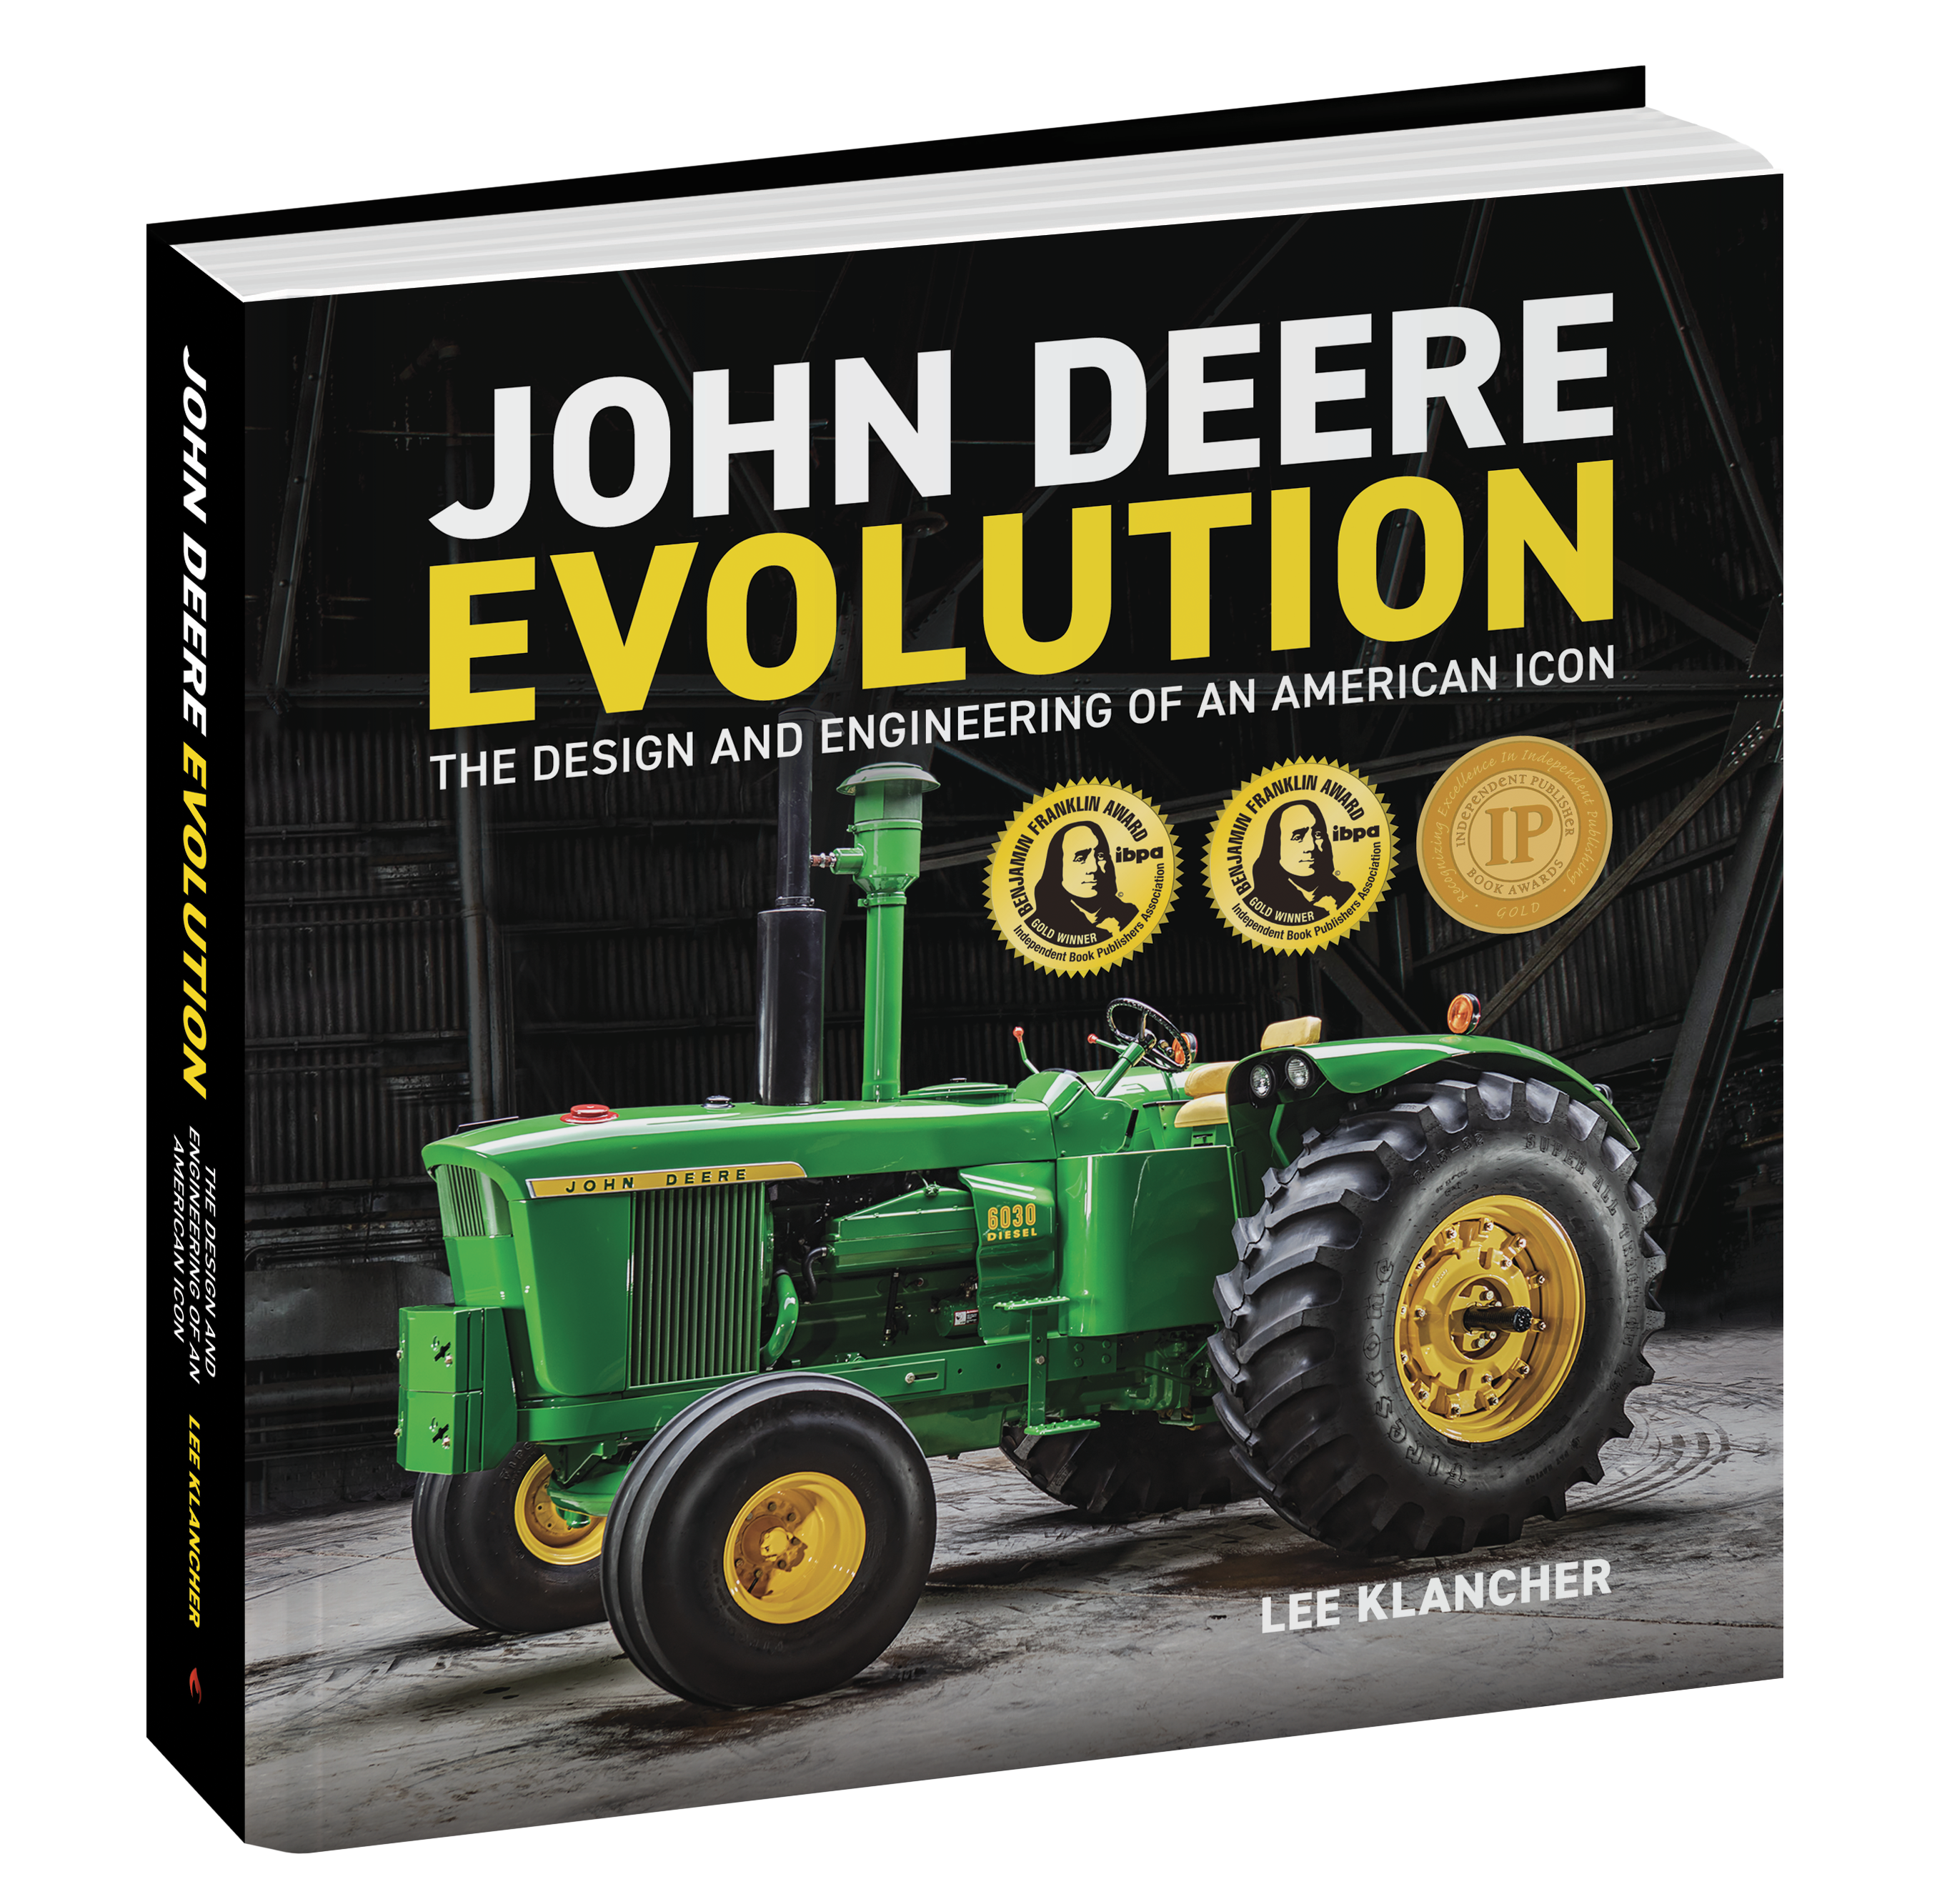 John Deere Evolution cover with award